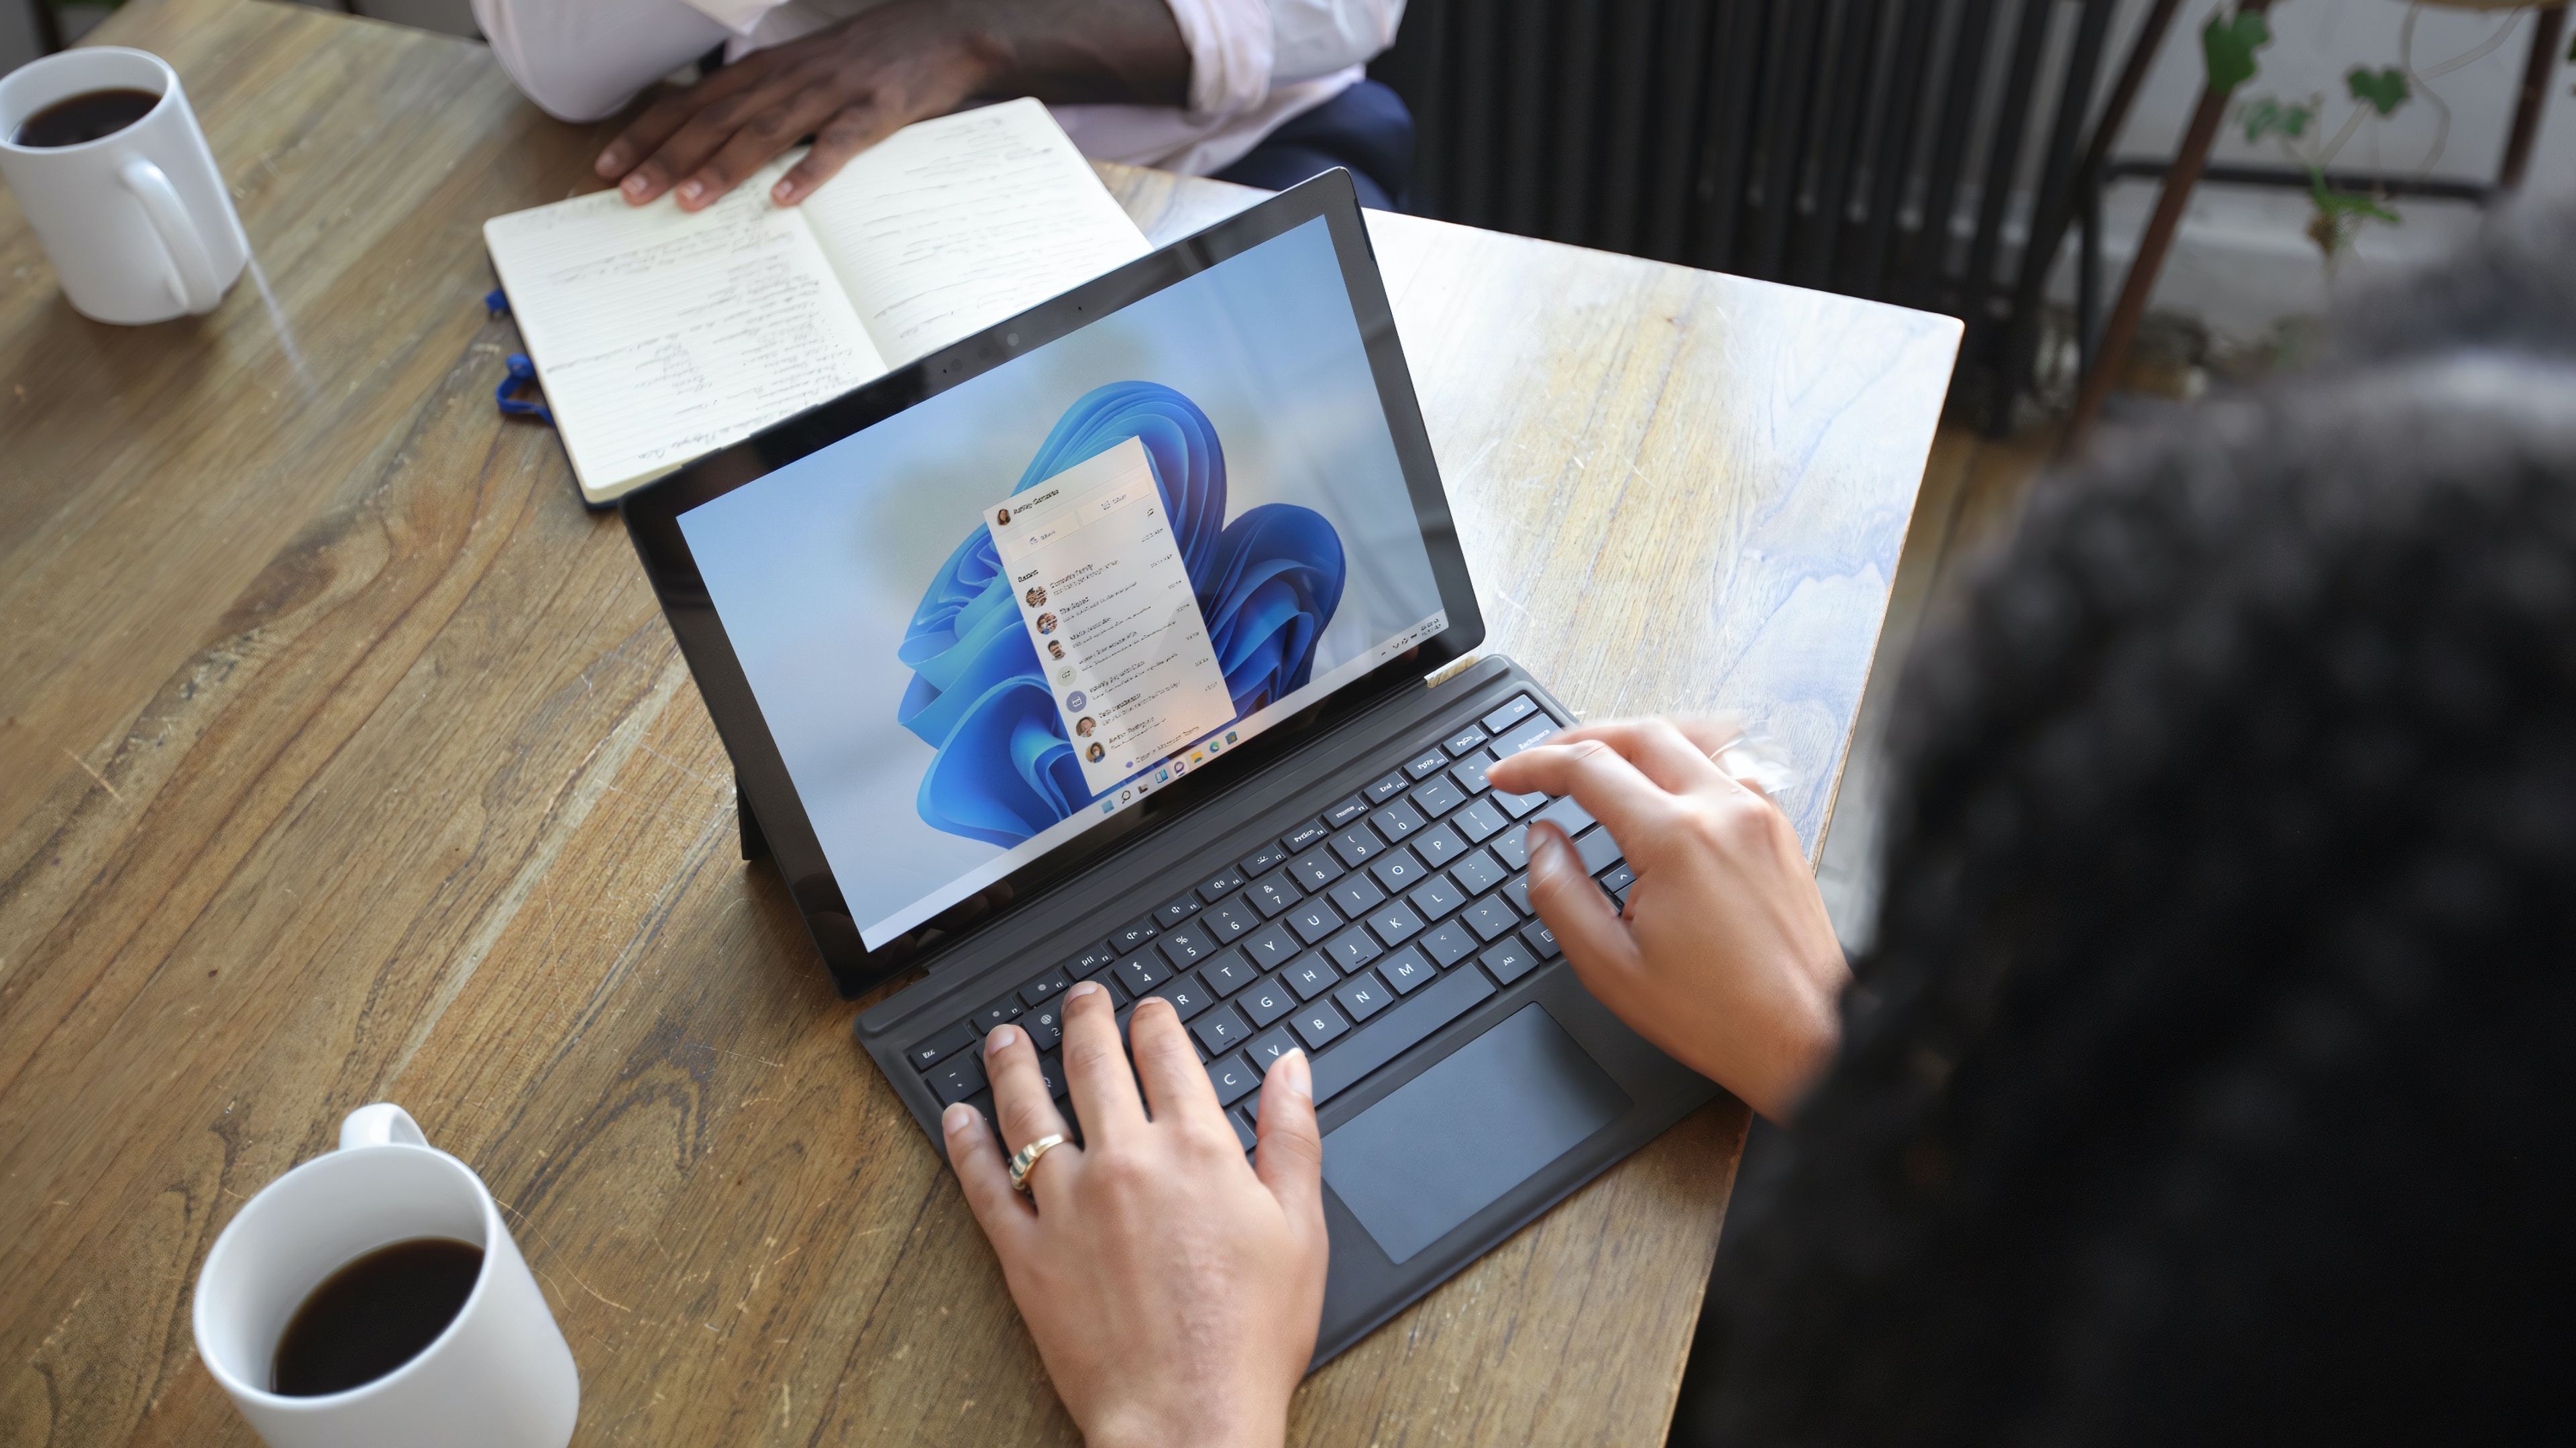 Portátil Microsoft Surface en las manos de una persona